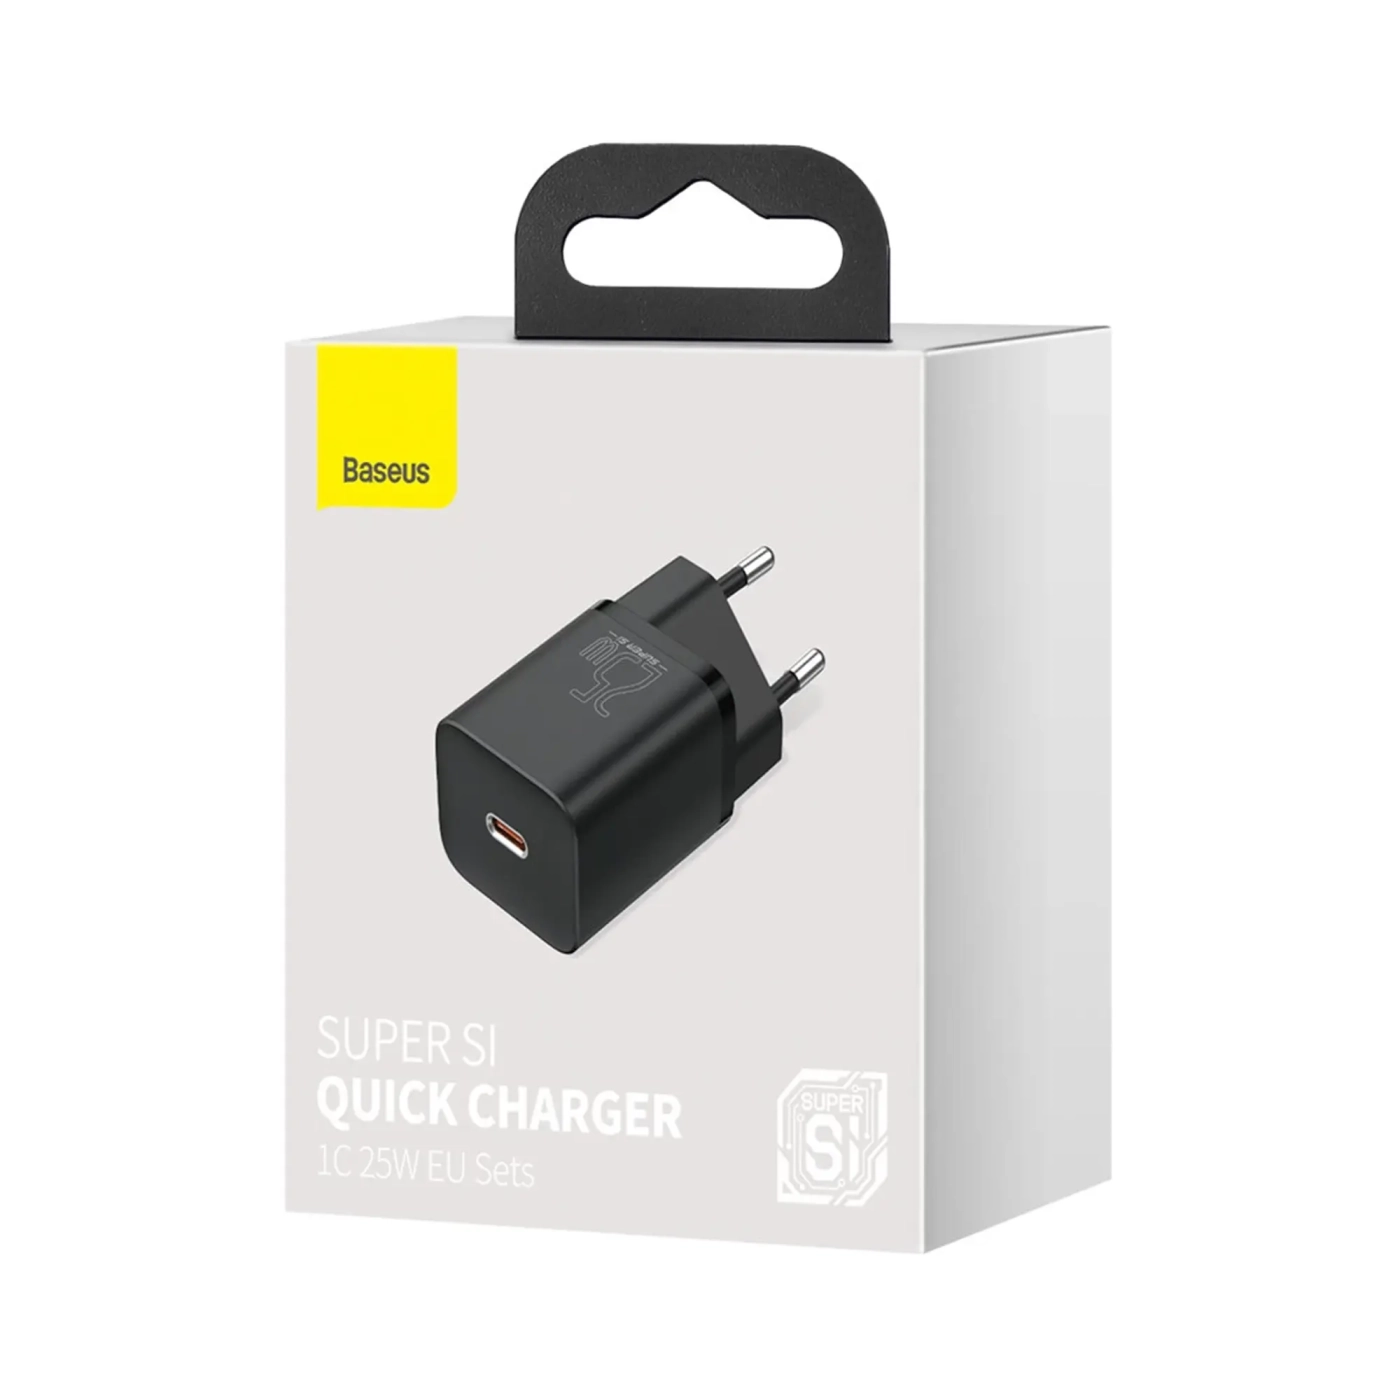 Купить Зарядное устройство для Baseus Super Si Quick Charger 1C 25W Black (CCSP020101) - фото 7